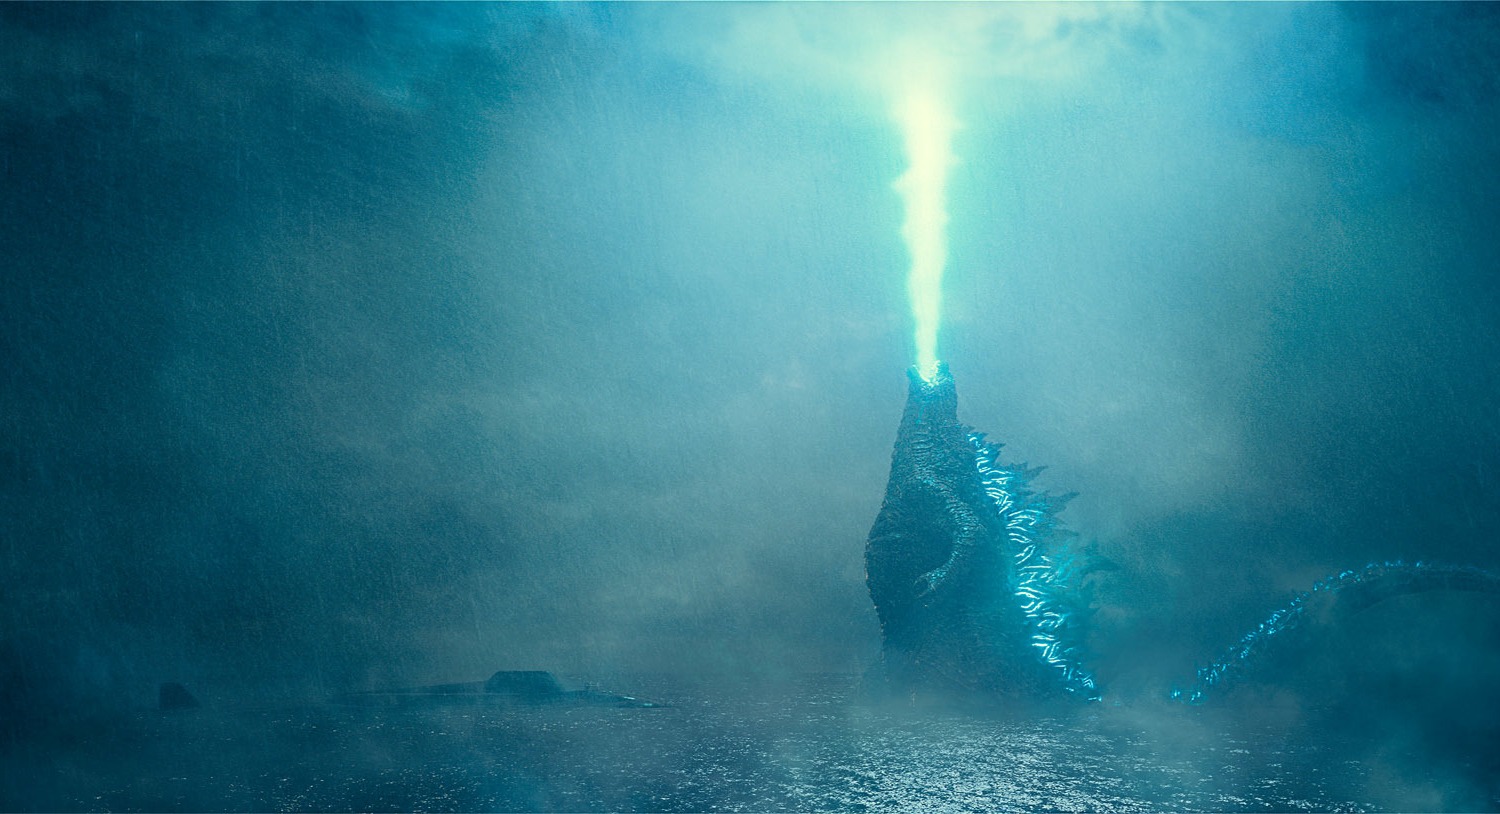 Godzilla KotM trailer image